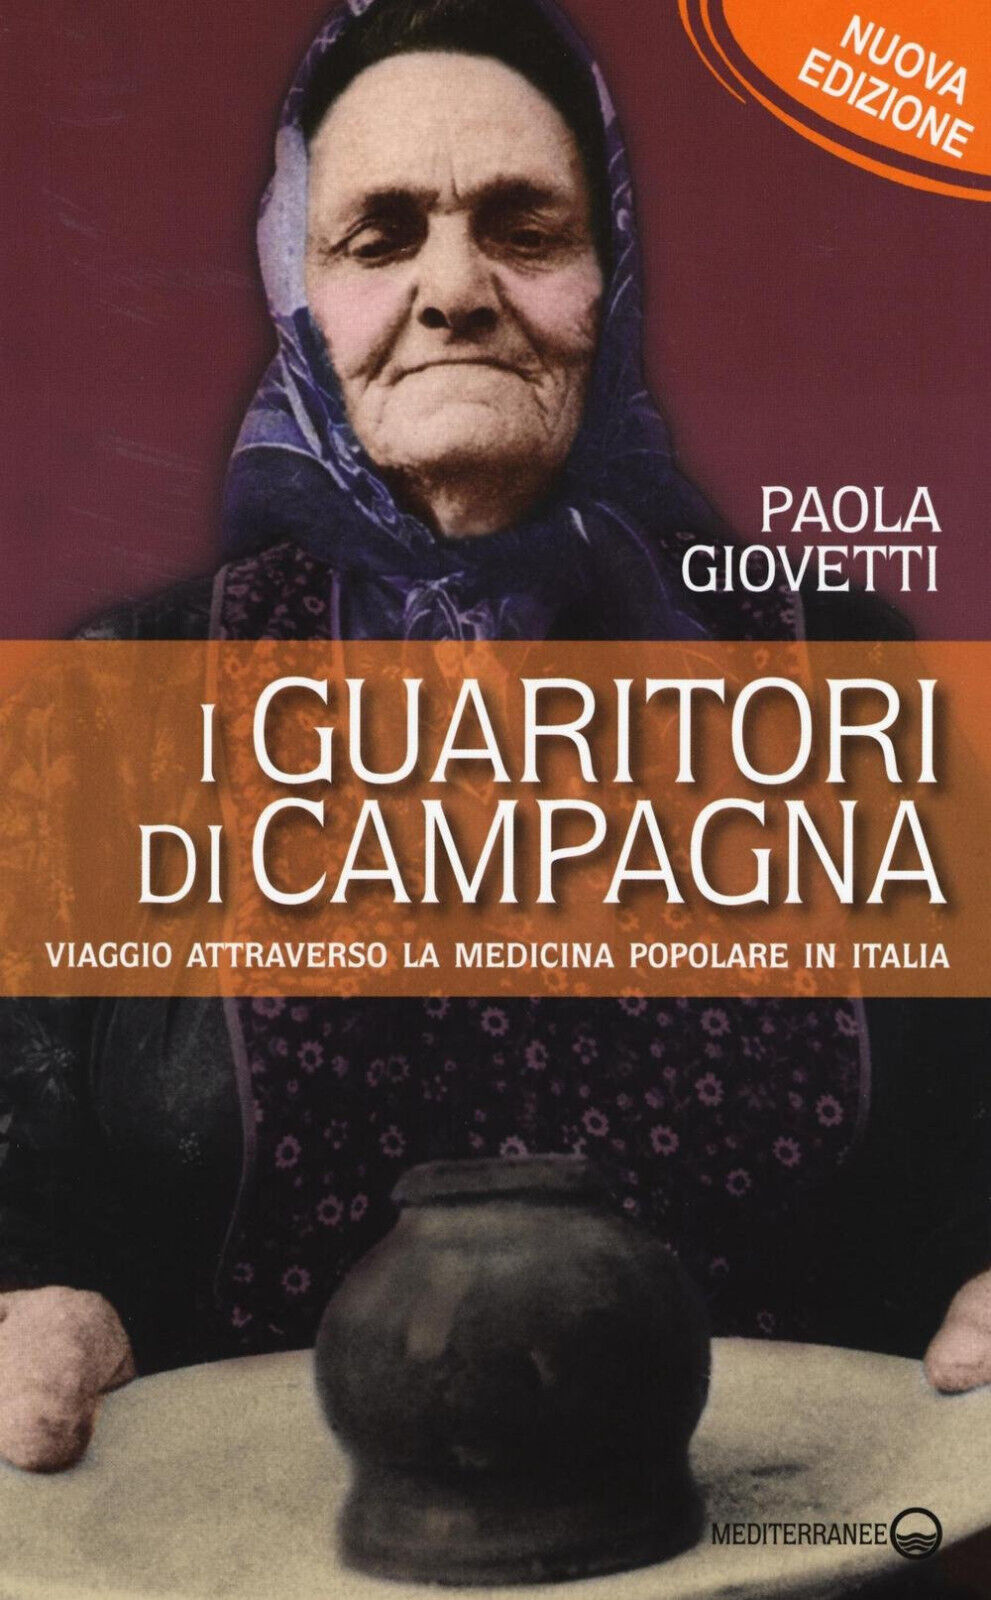 I guaritori di campagna - Paola Giovetti - Edizioni Mediterranee, 2016 libro usato